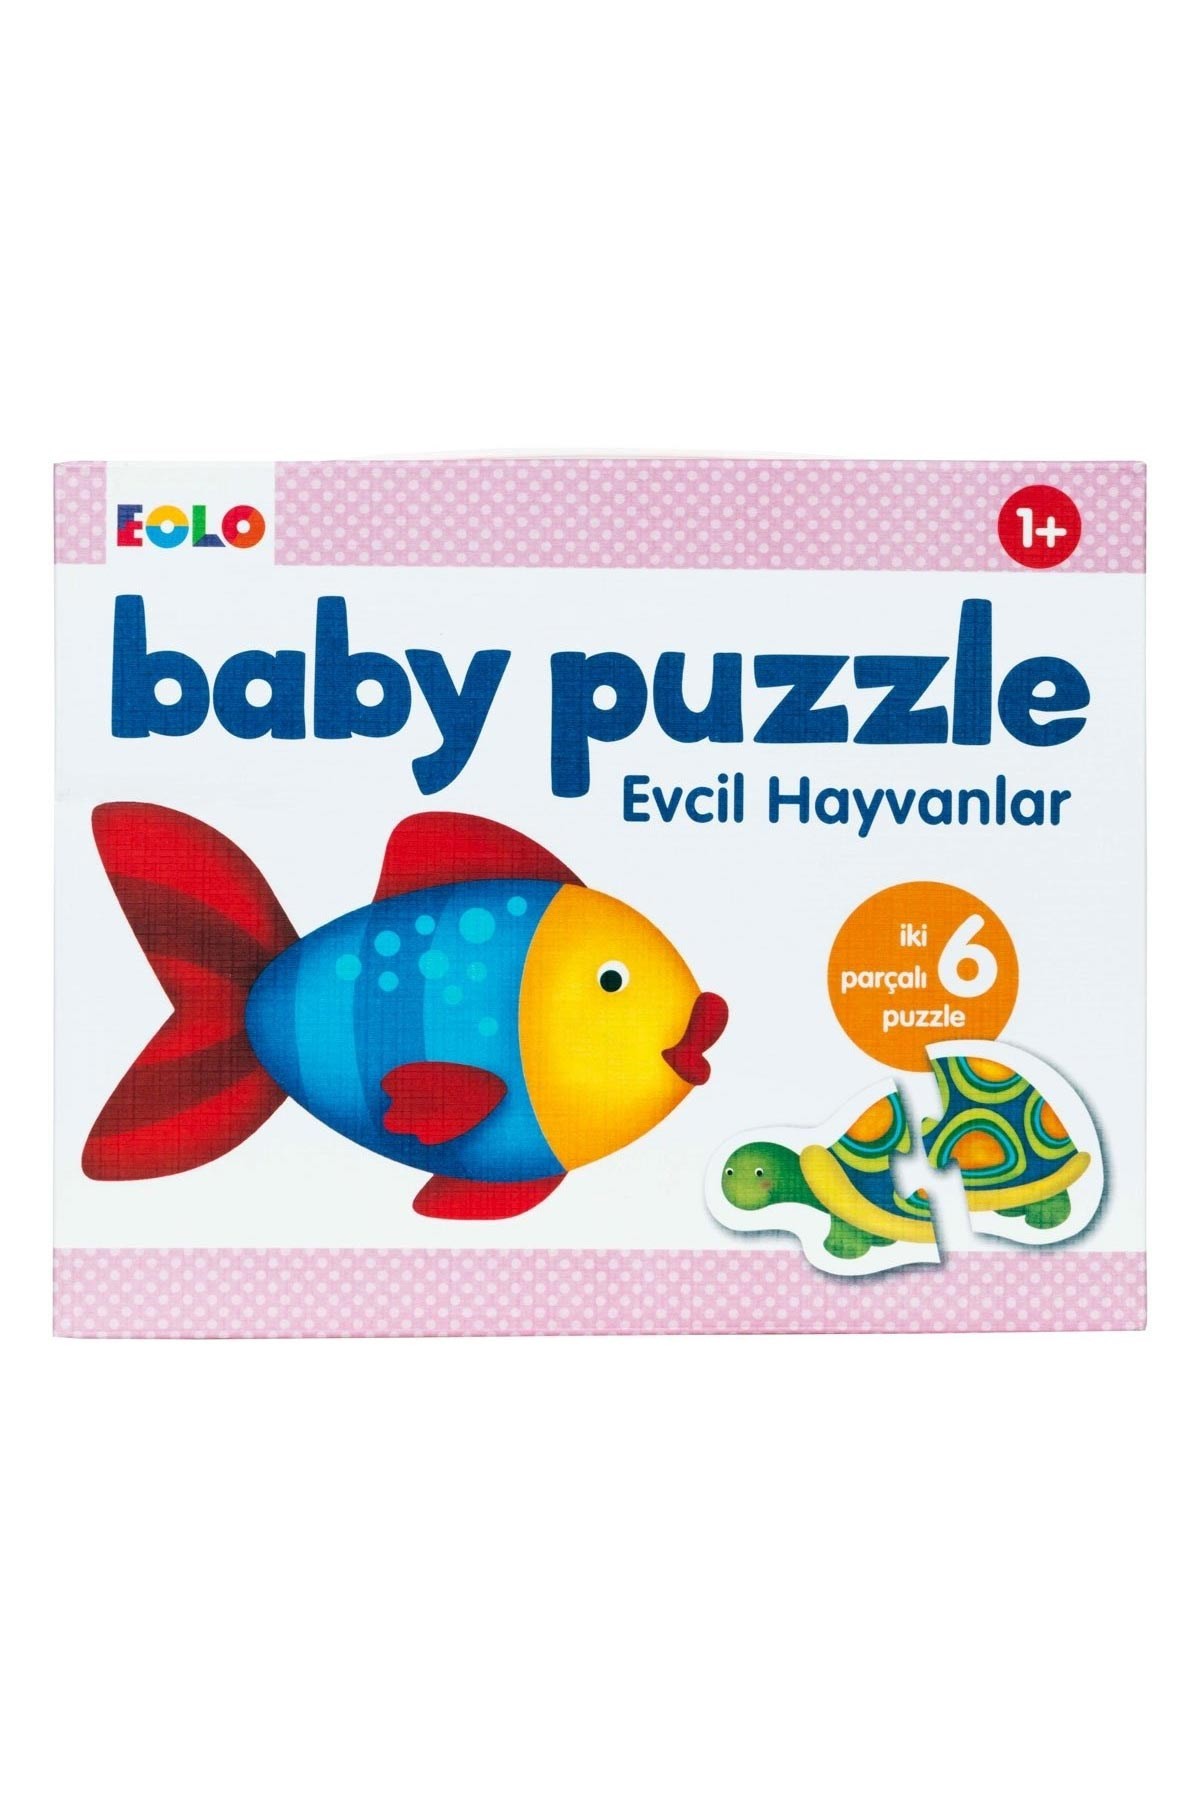 Eolo Baby Puzzle Evcil Hayvanlar